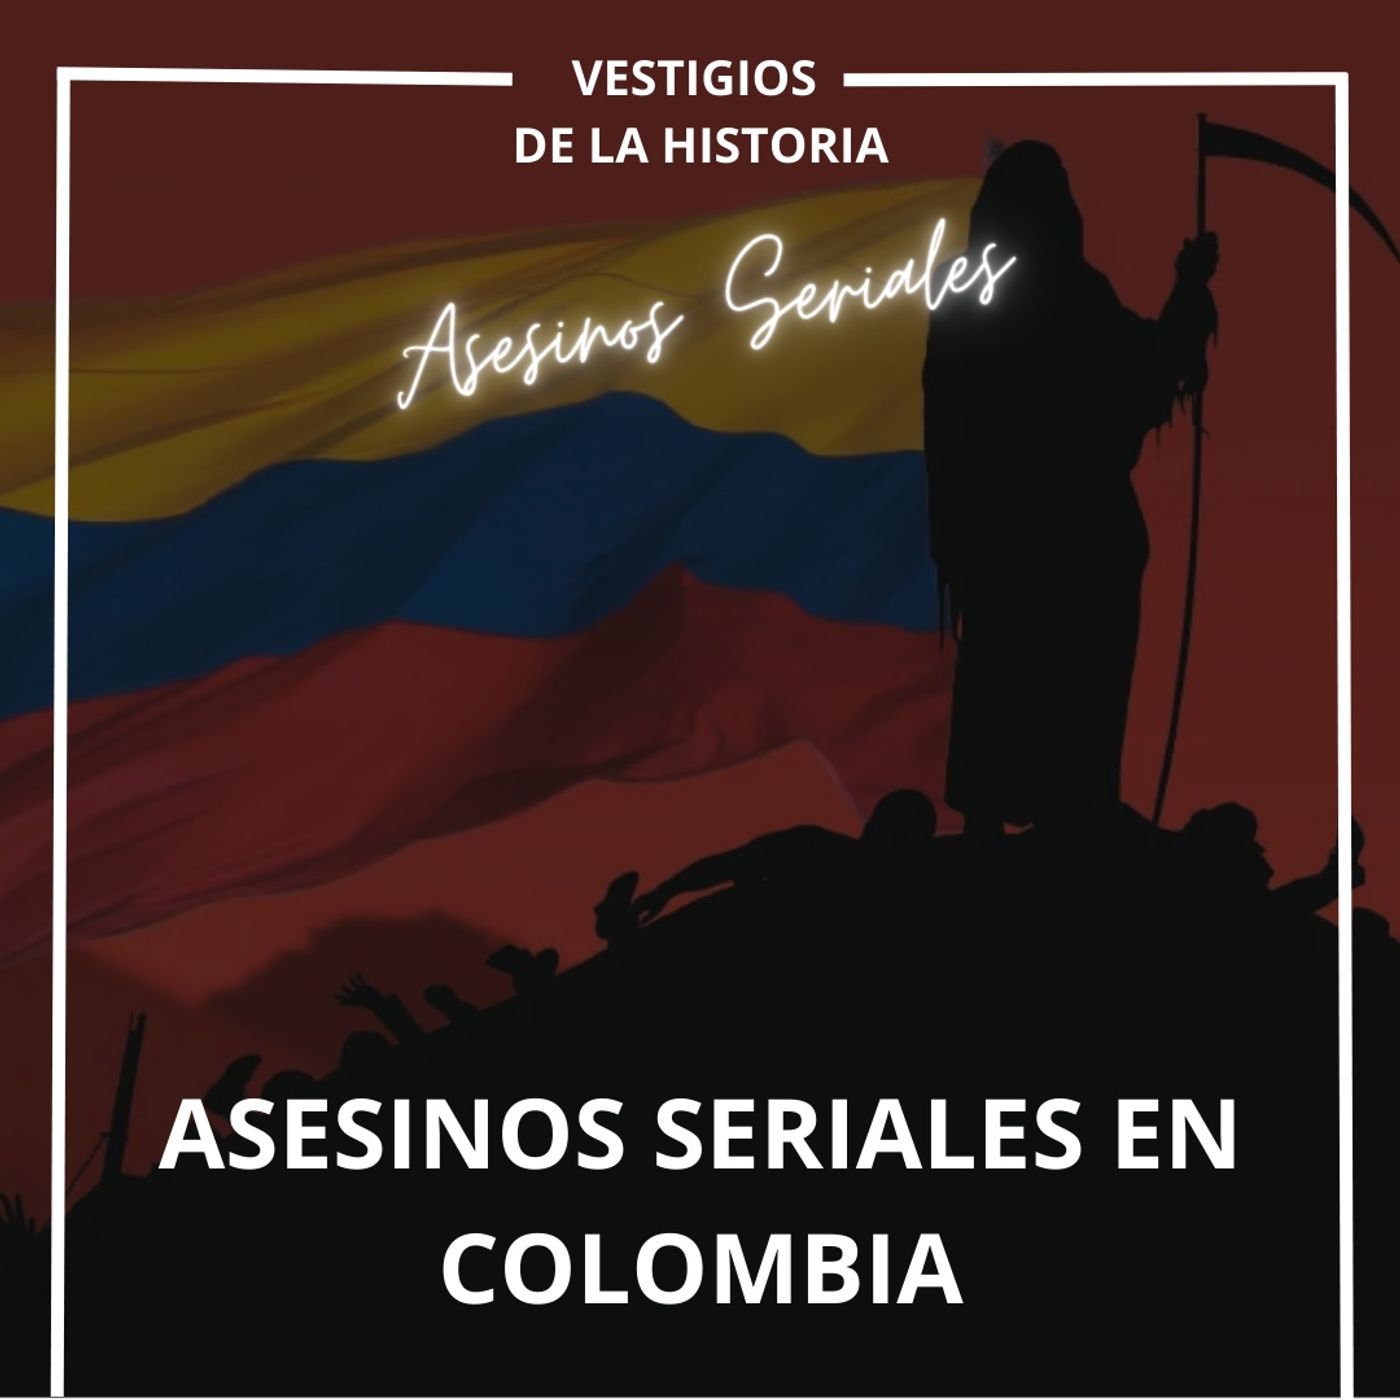 Asesinos seriales en Colombia